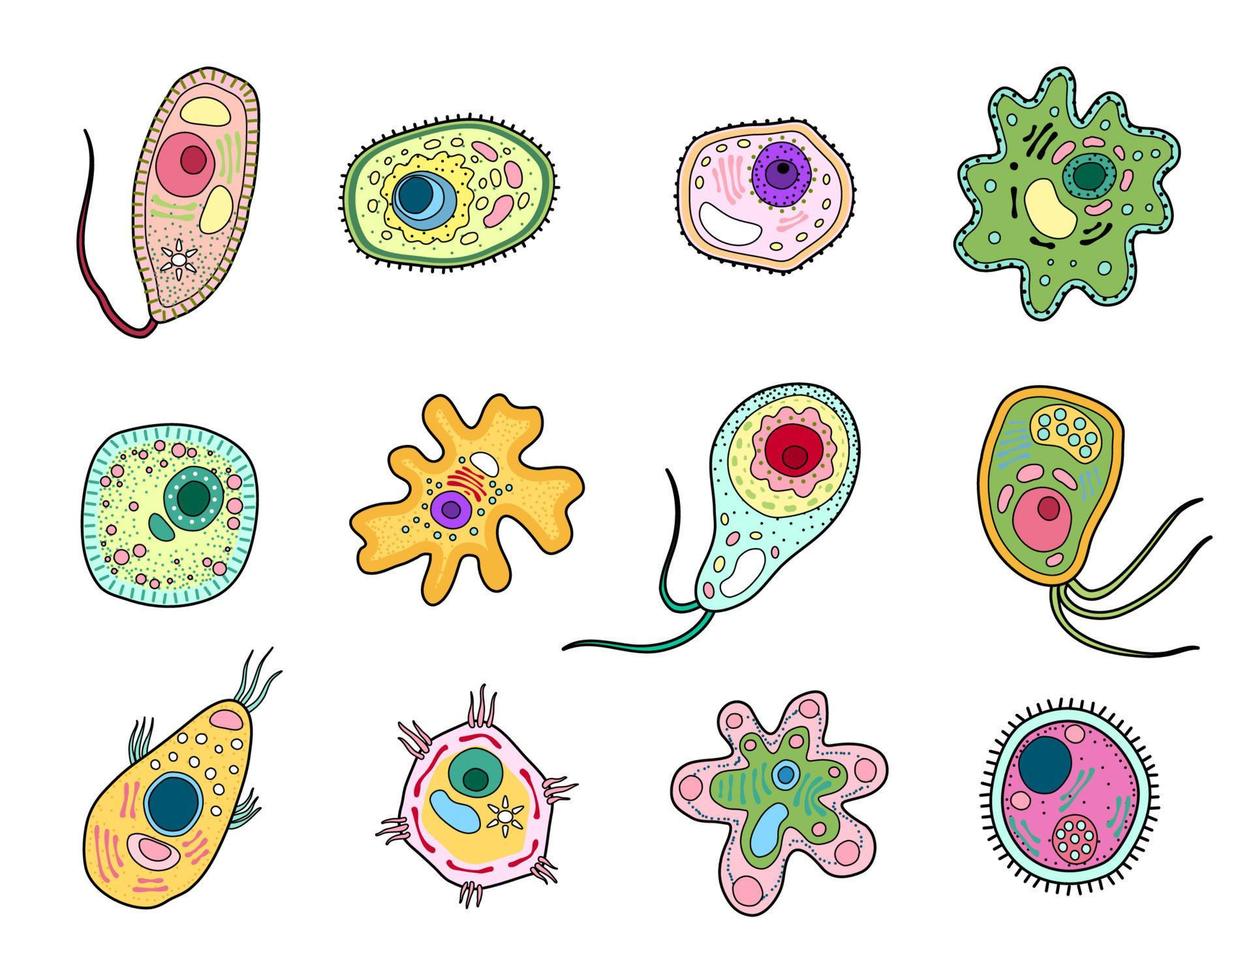 células de microorganismos protistas, protozoos o amebas vector